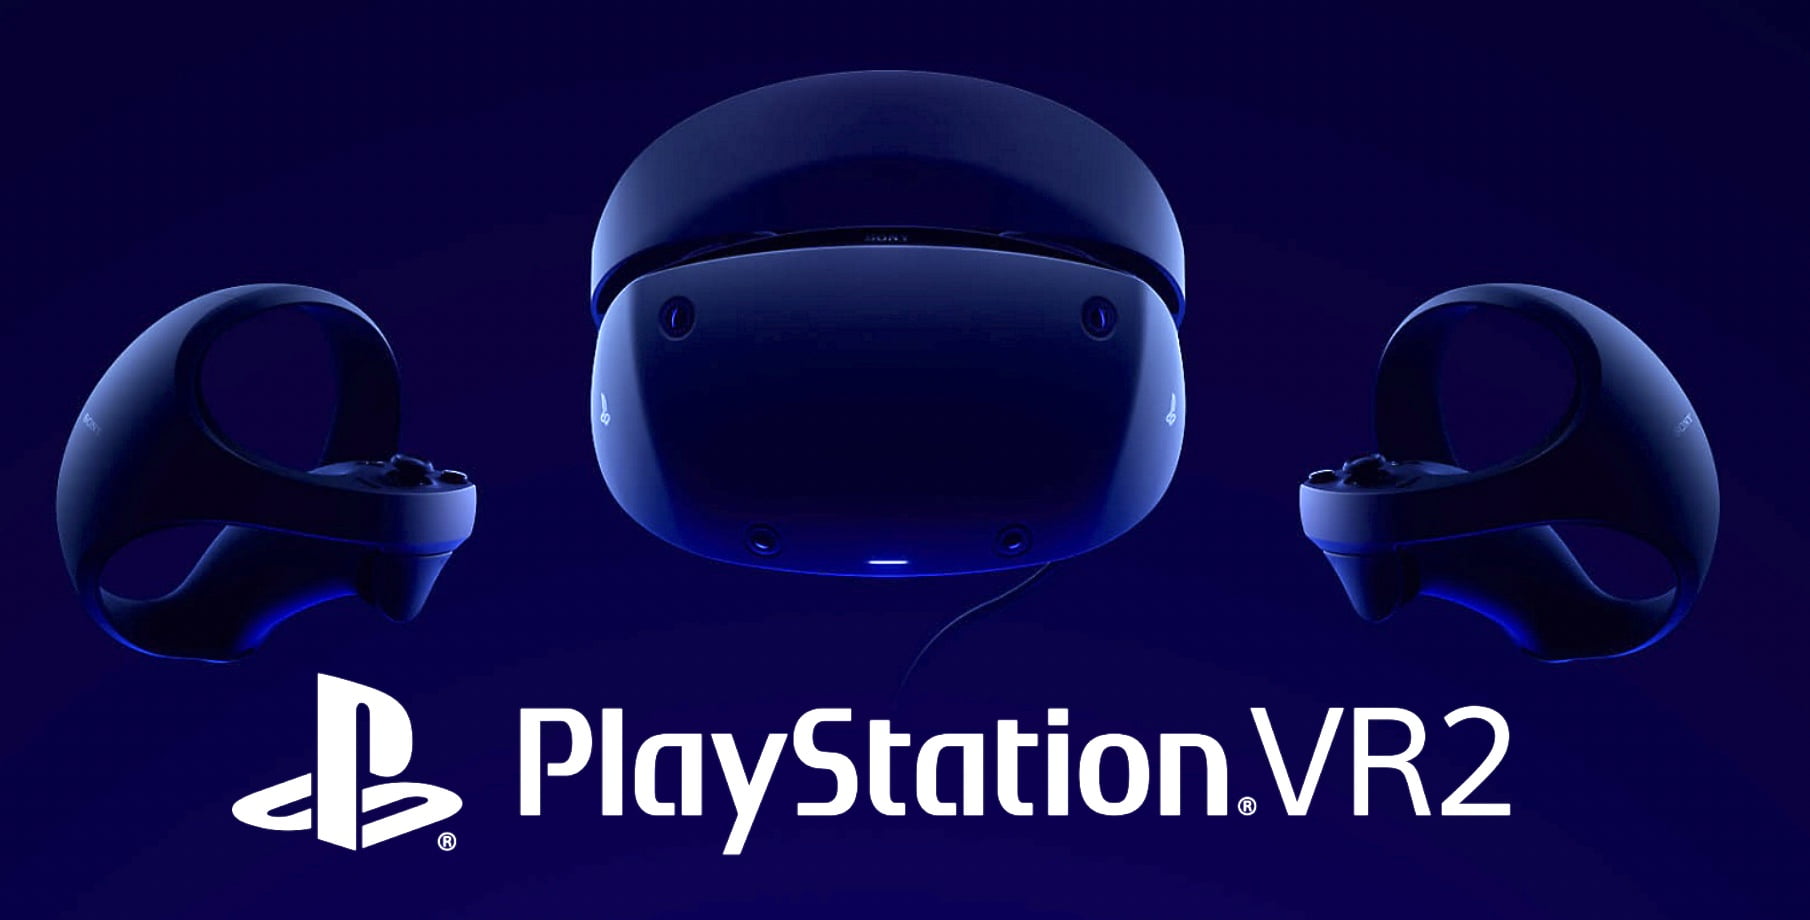 Playstation VR 2: Ex-Valve manager is impressed